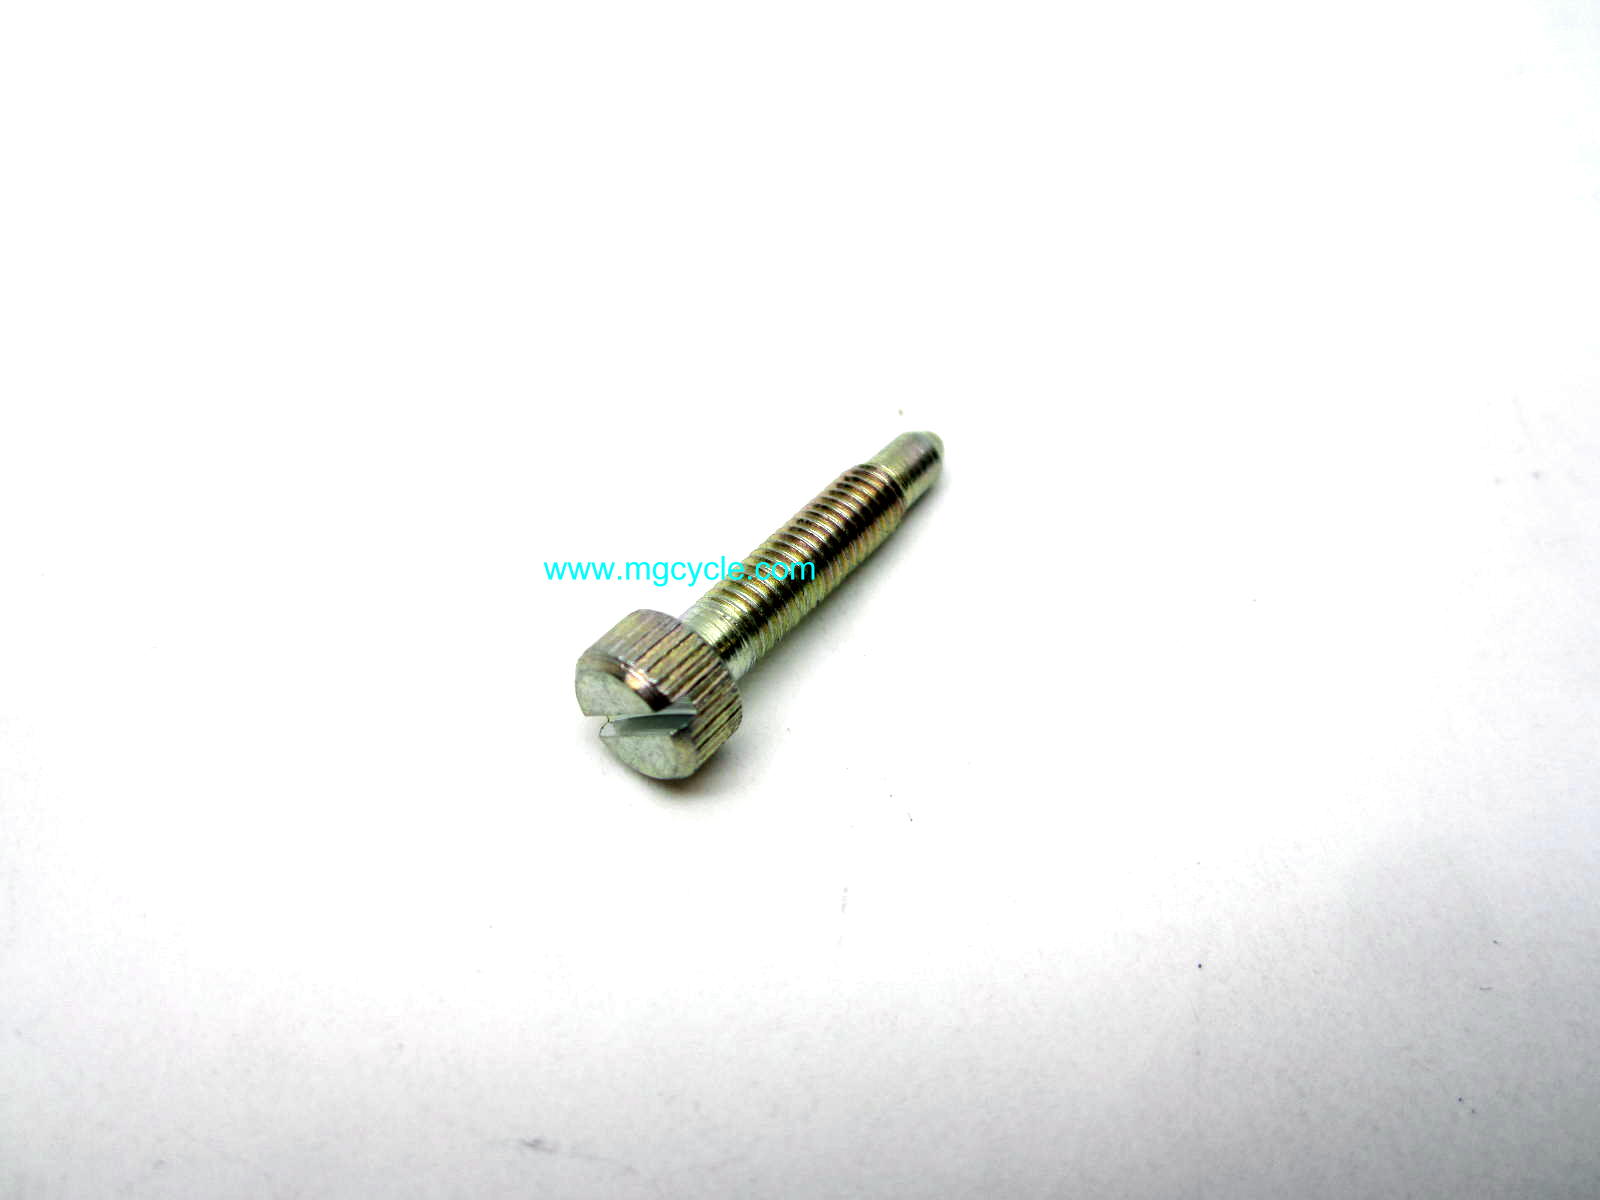 Dellorto 7673 idle adjusting screw, VHB PHF PHF PHBH, slide stop - Click Image to Close